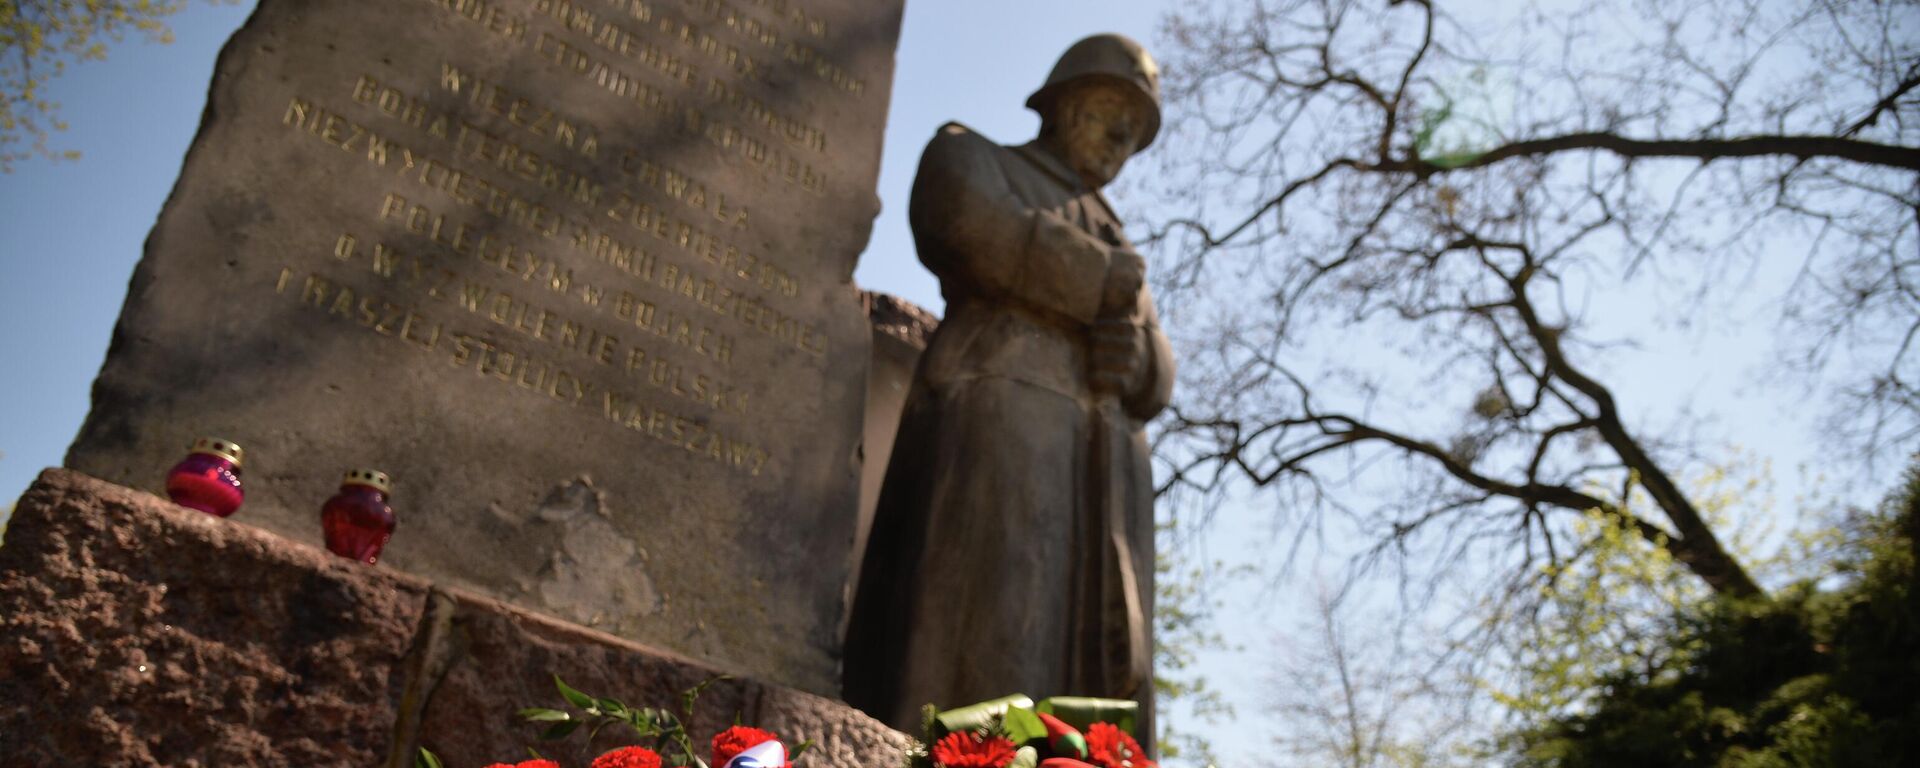 Vòng hoa và hoa tươi tại đài tưởng niệm những người lính Xô-viết hy sinh trong các trận đánh giải phóng Ba Lan, tại nghĩa trang Brudnovsky ở Warsaw trong Ngày Chiến thắng. - Sputnik Việt Nam, 1920, 09.05.2022